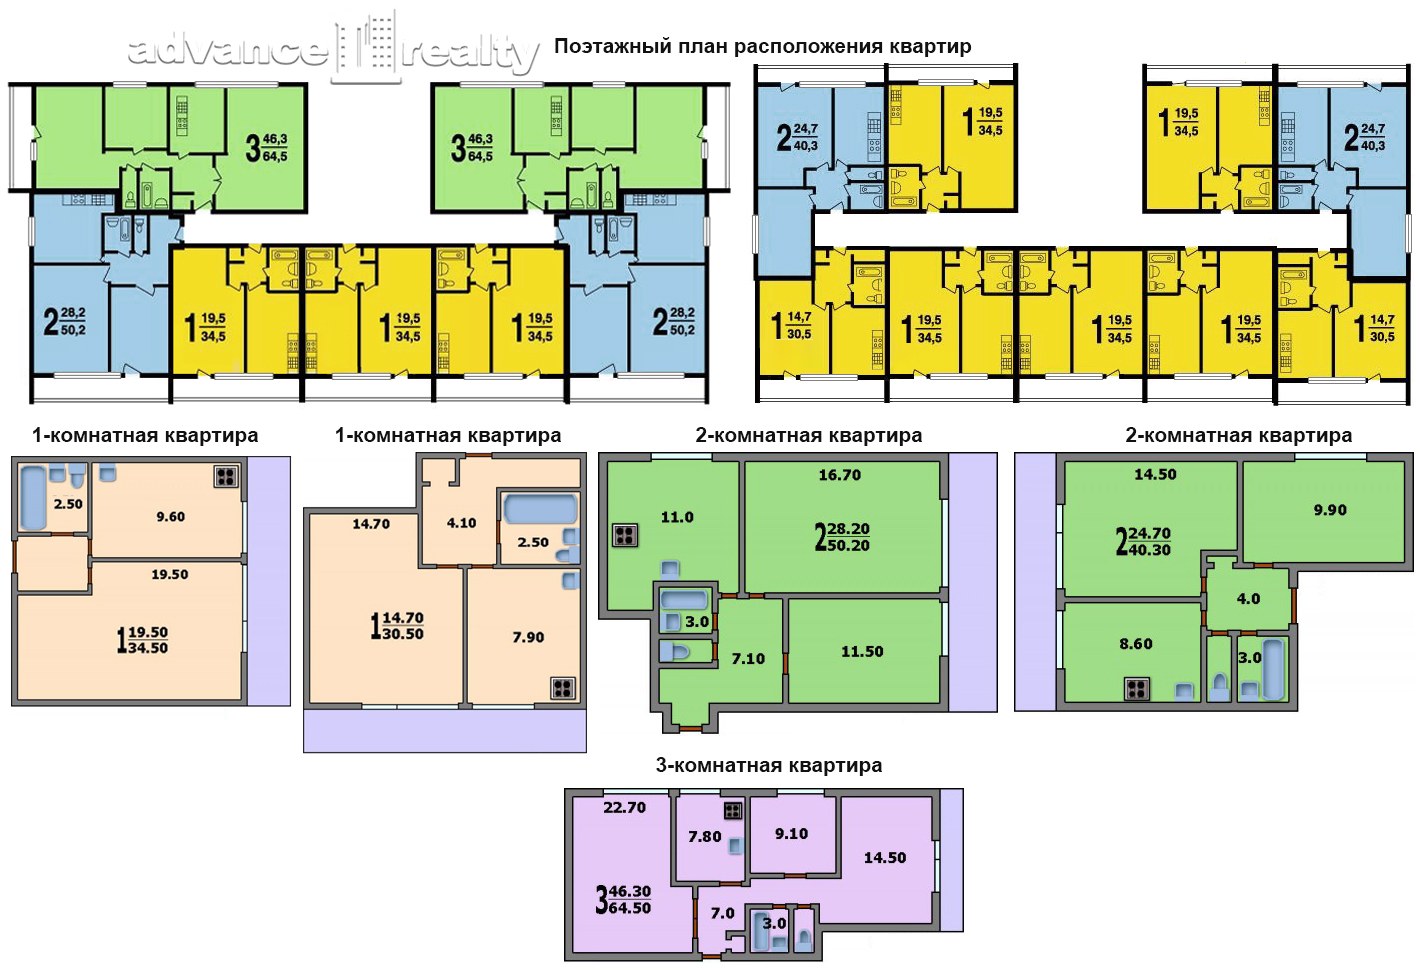 Квартиры в 16а. Планировка квартир II-68 С размерами. Планировки квартир II-68-01/16 С размерами.